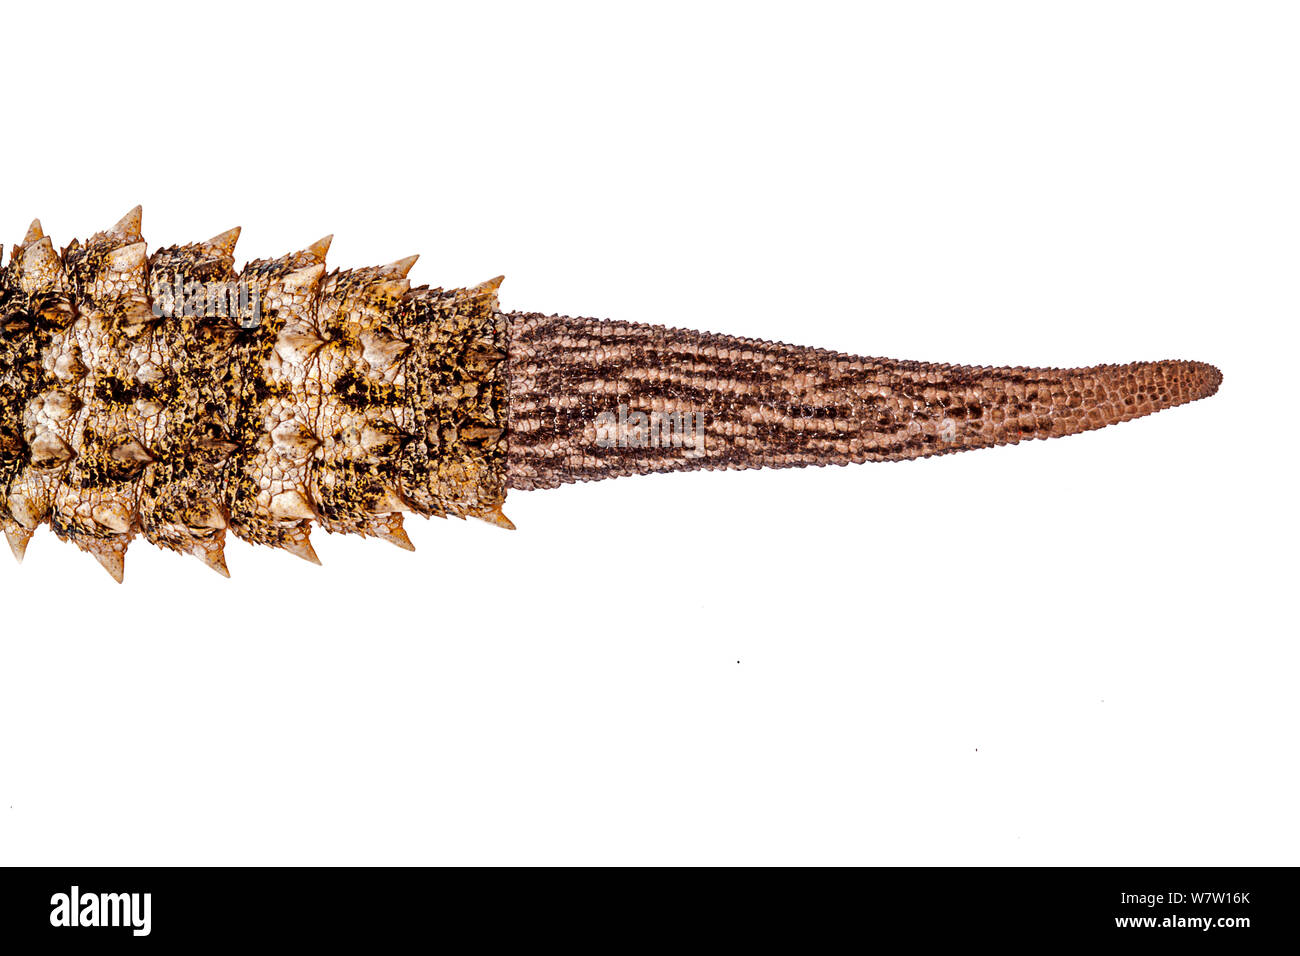 Regenerierten Schwanz des maurischen Wand Gecko (Tarentola mauritanica), Kreta, Griechenland, März. Meetyourneighbors.net Projekt. Stockfoto